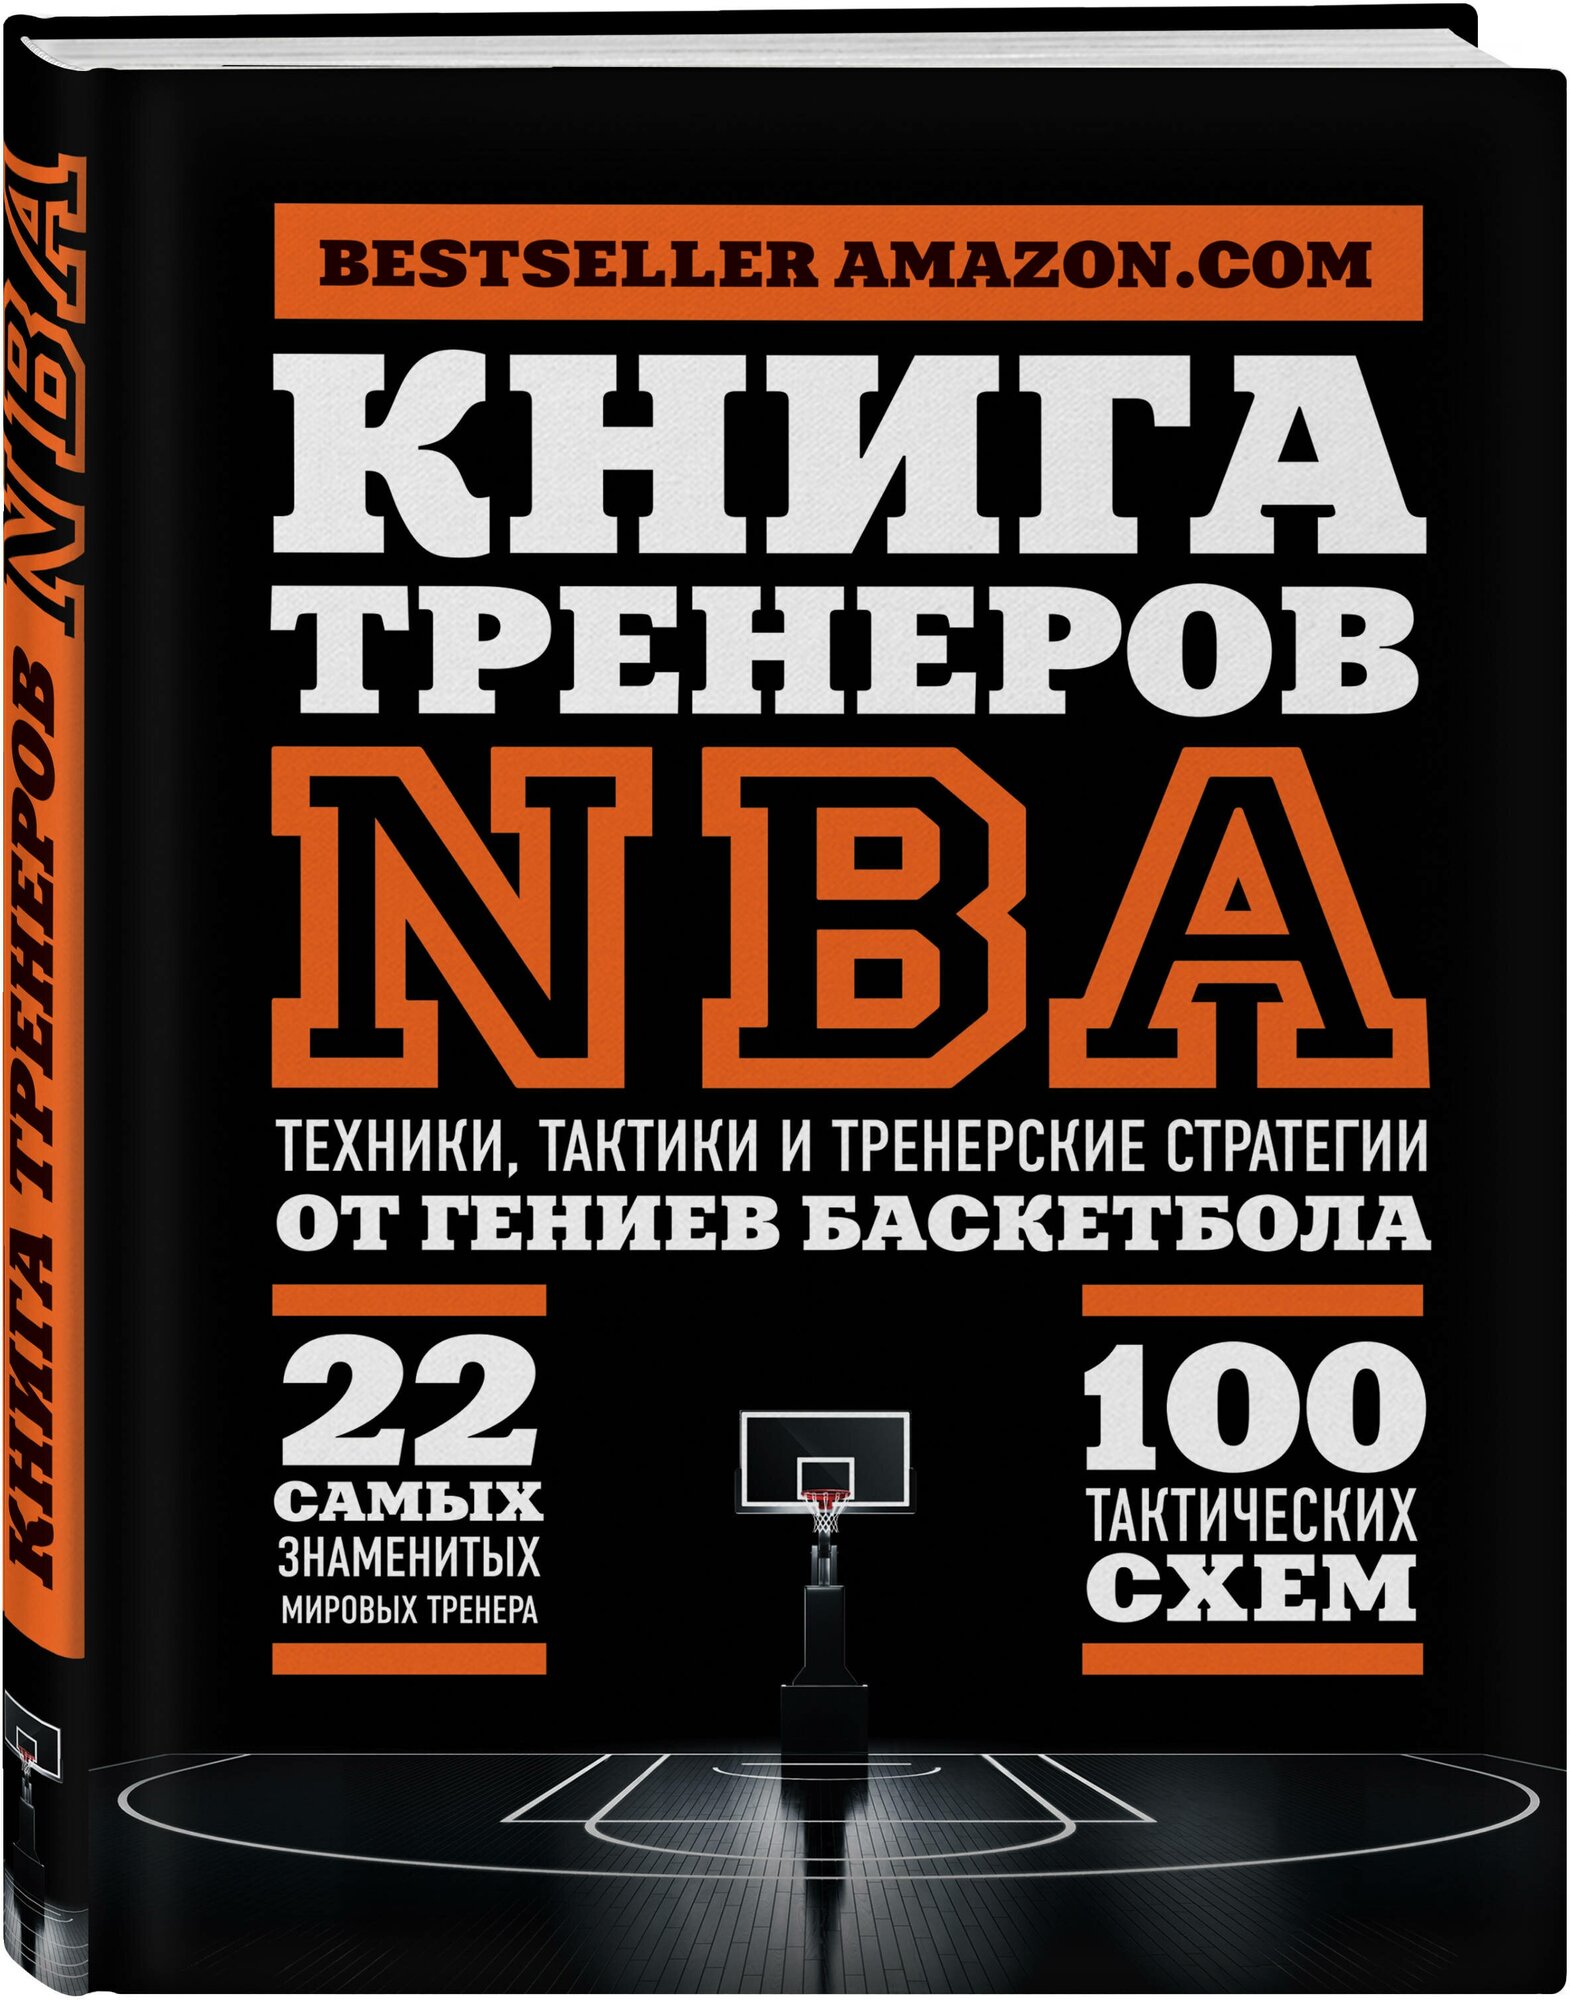 Ассоциация тренеров NBA. Книга тренеров NBA: техники, тактики и тренерские стратегии от гениев баскетбола